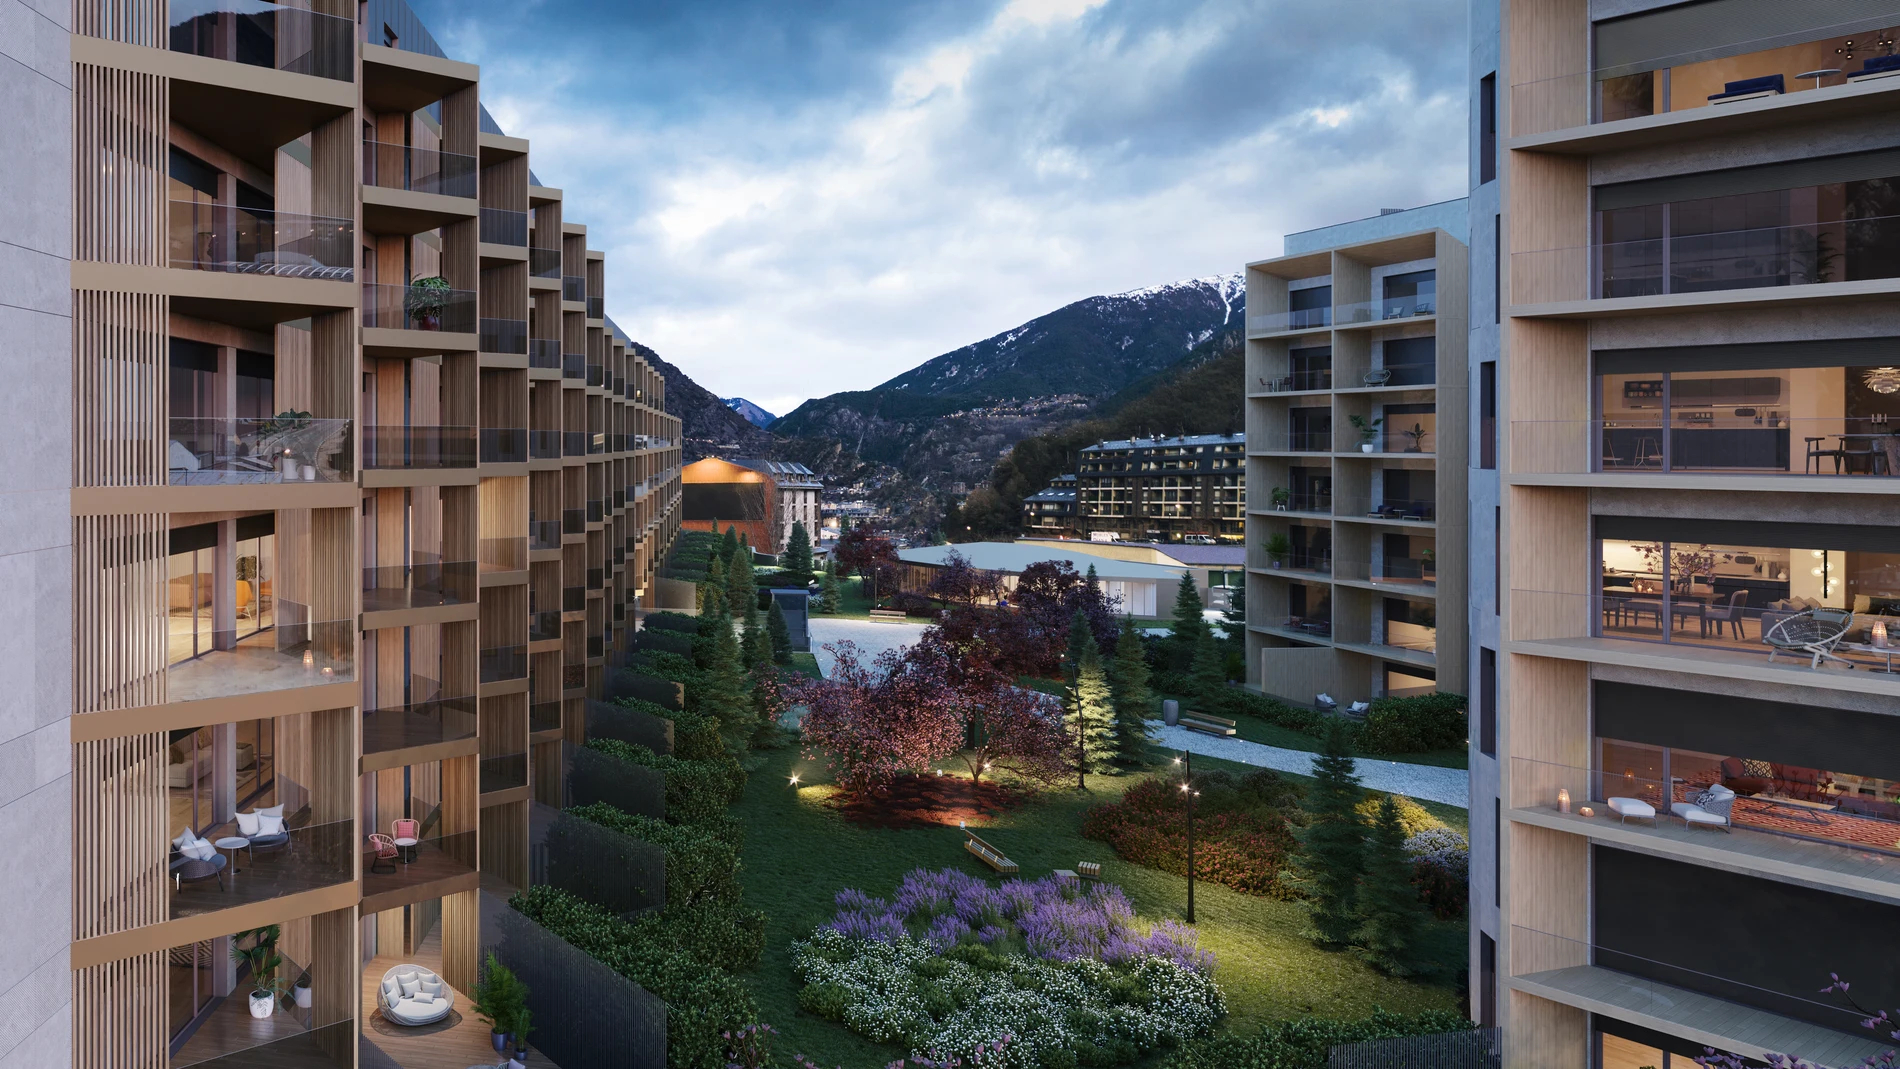 OD Real Estate construirá un edificio exclusivo con viviendas de hasta 234 metros cuadrados a cinco minutos del centro de Andorra